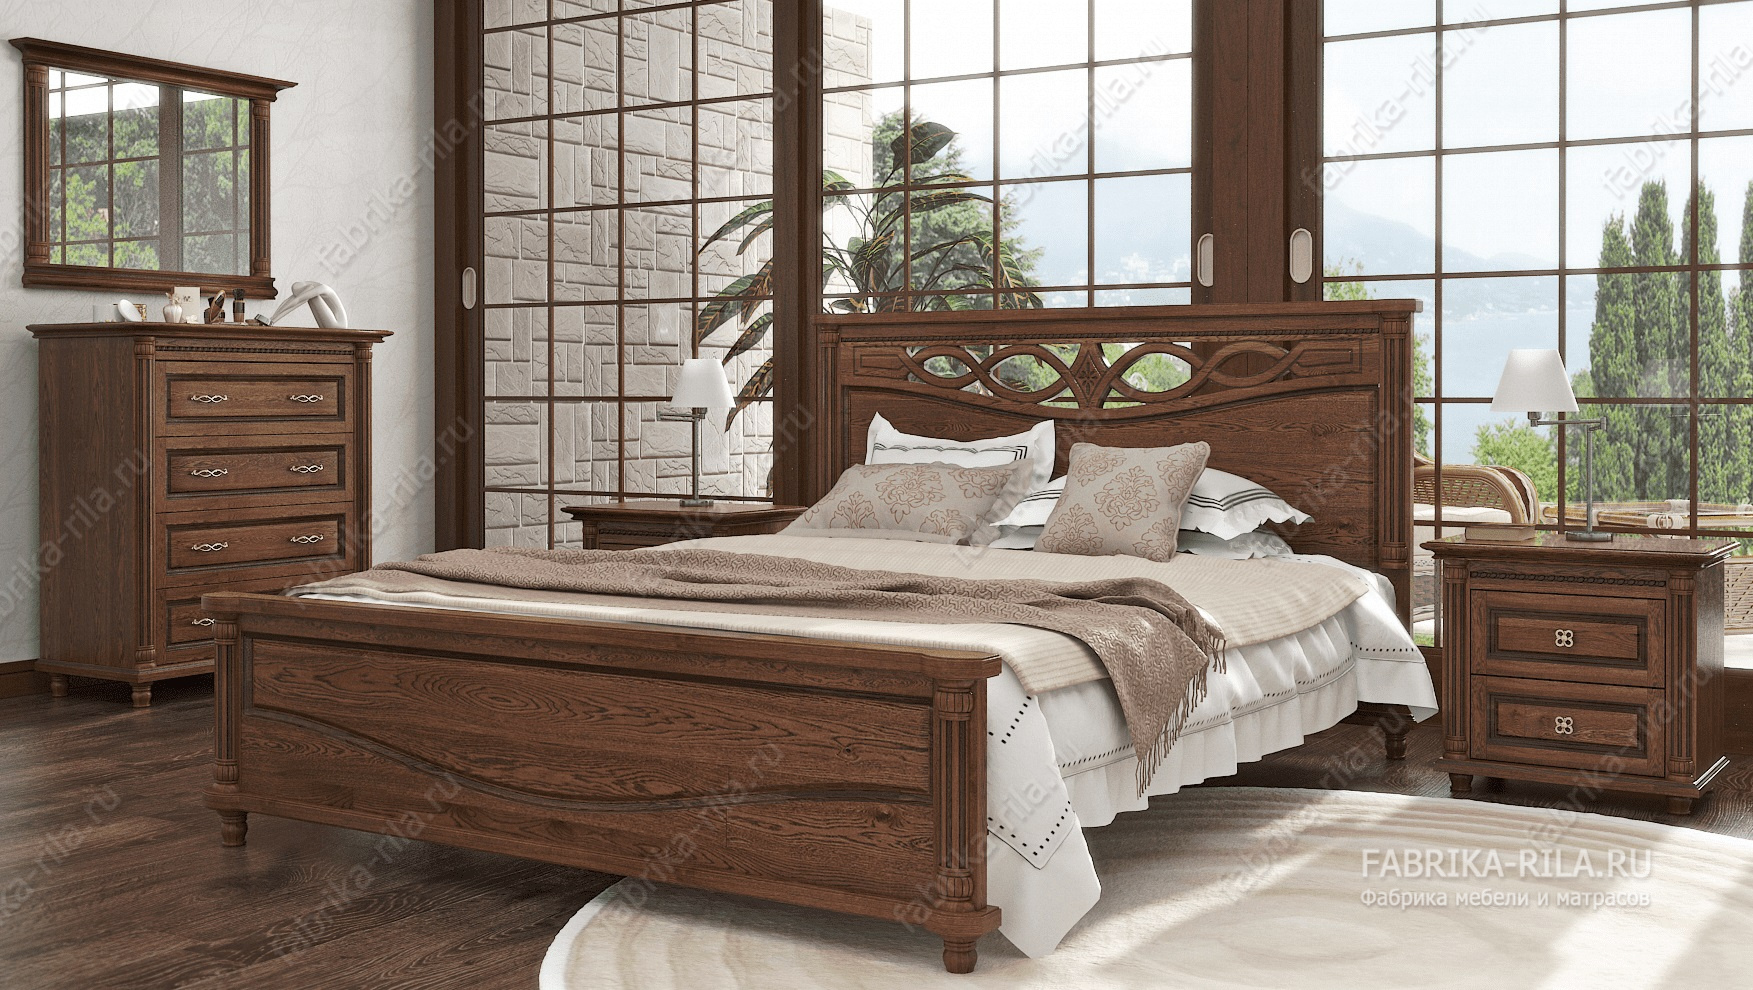 Кровать Malta — 120x200 см. из сосны